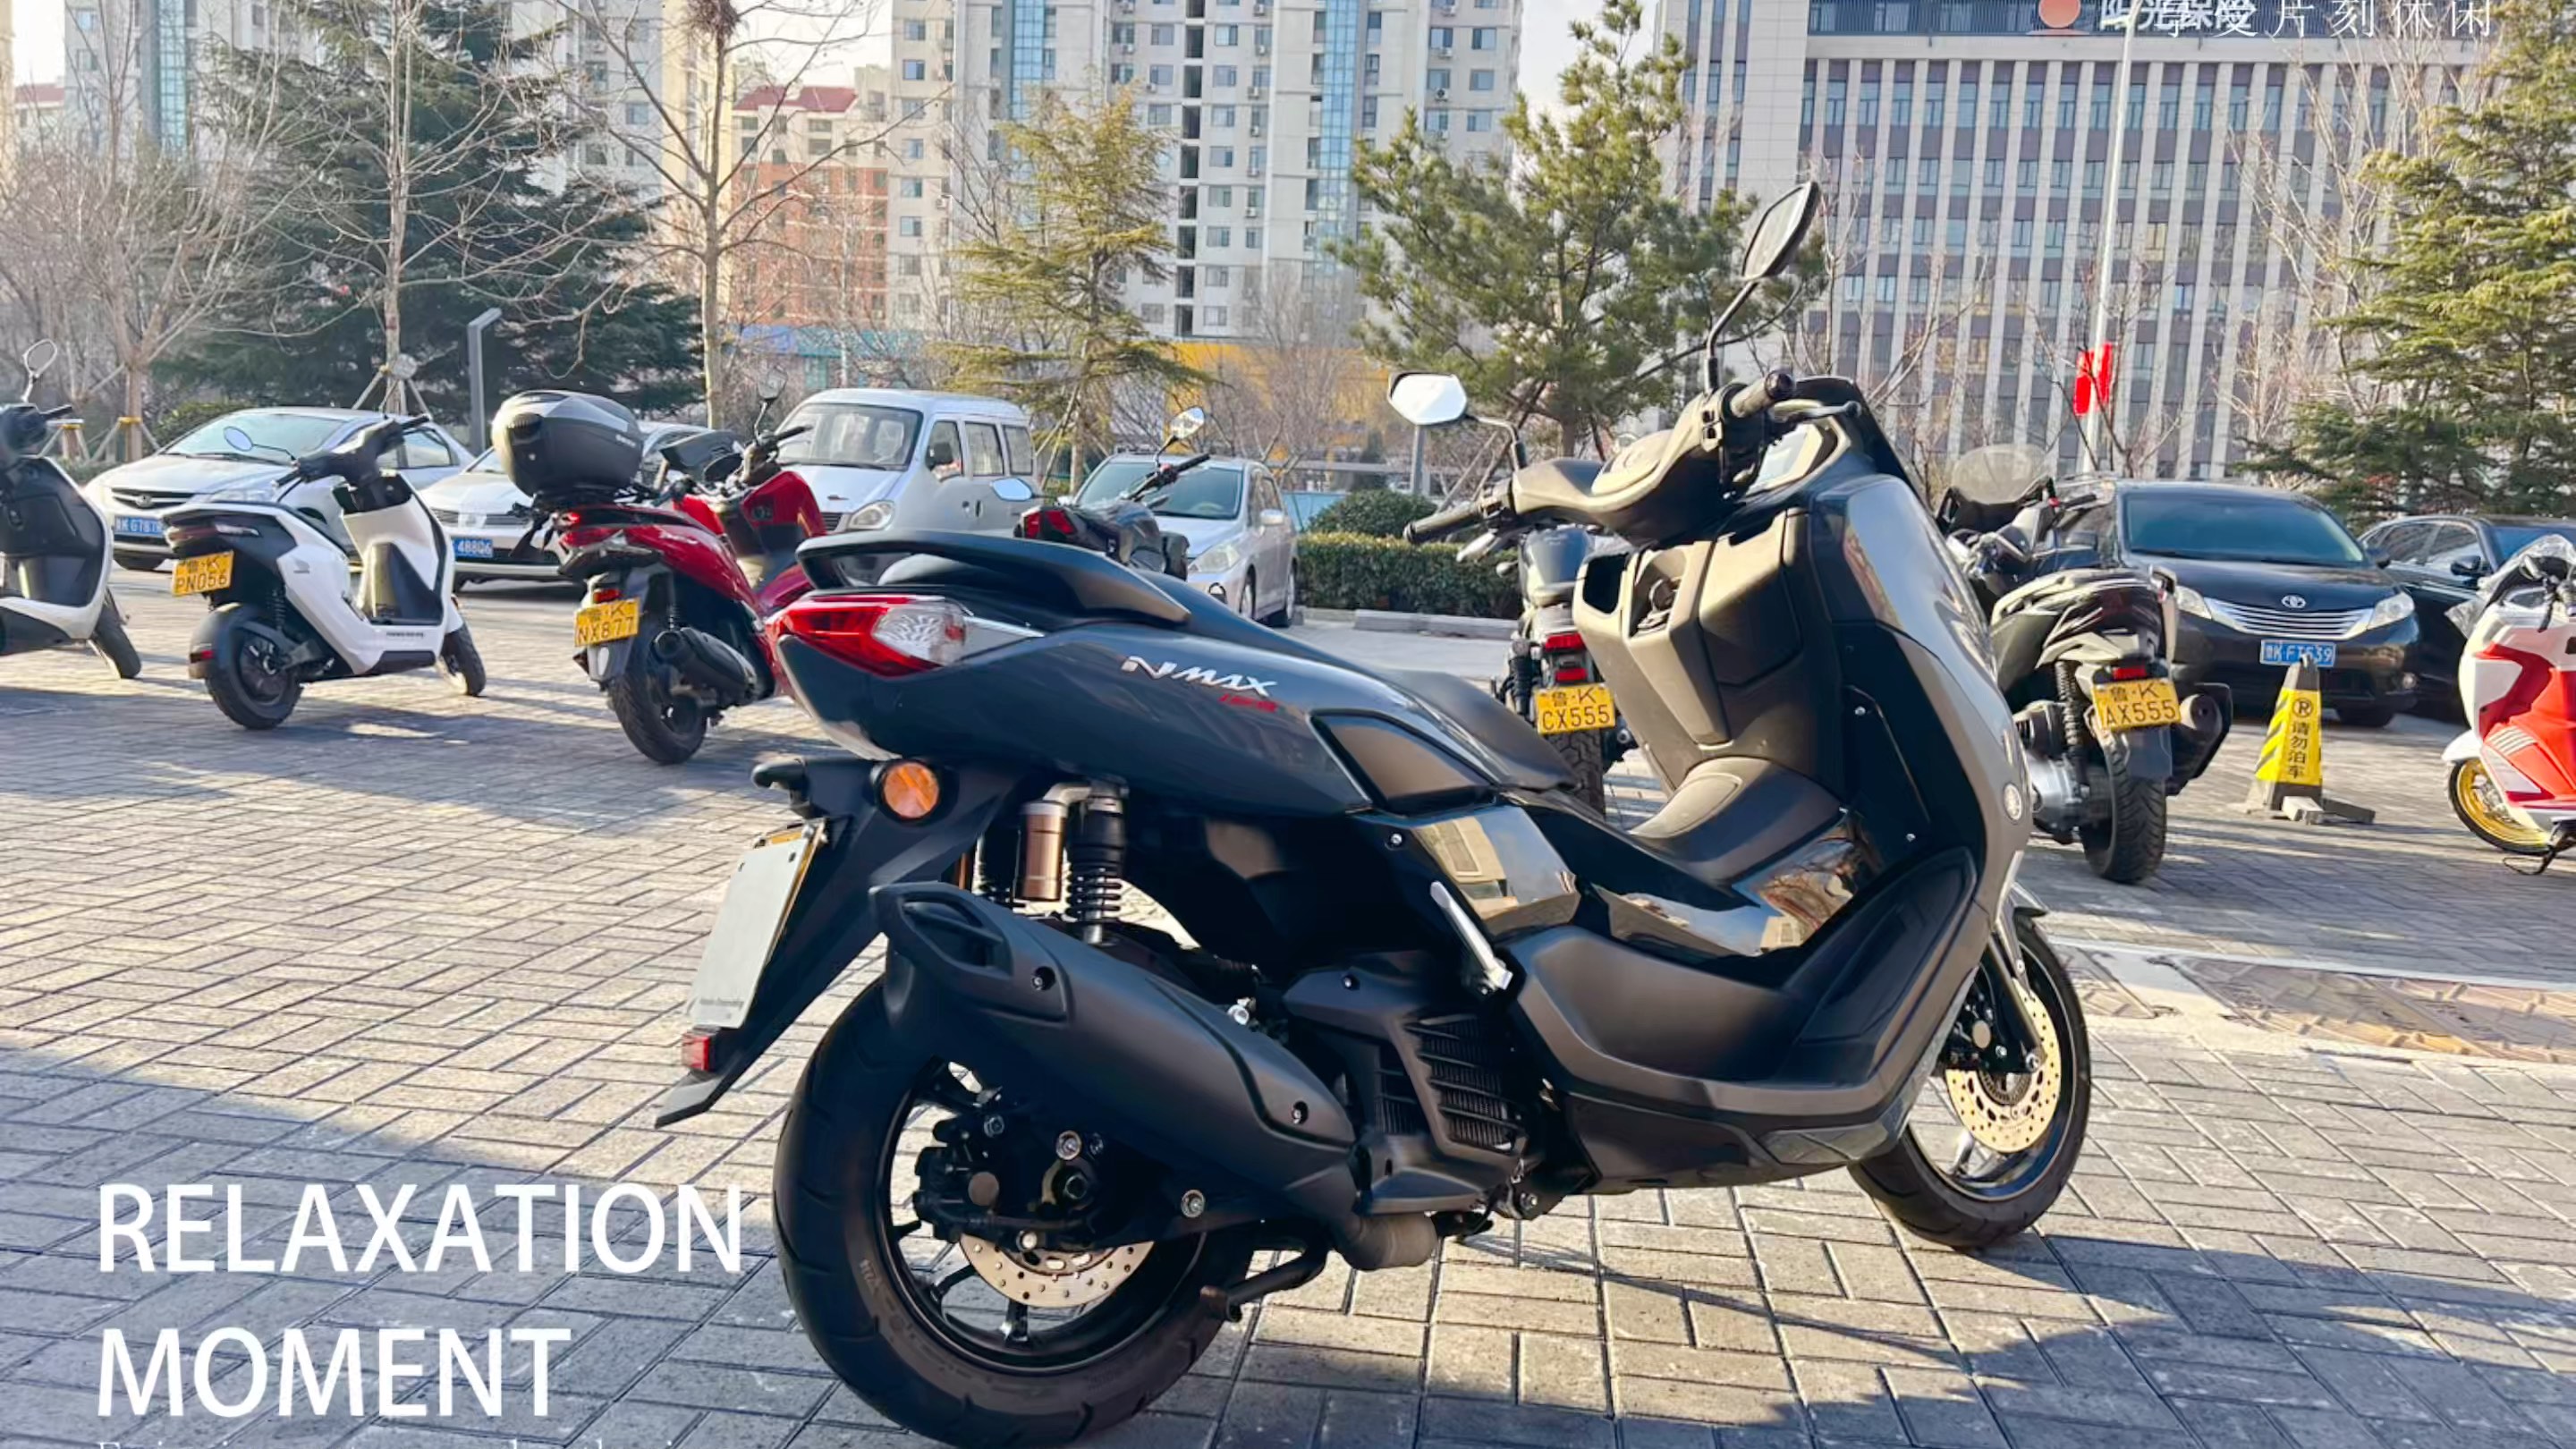 雅马哈nmax155摩托车,颜色全,官网价:27800元门店价:25800元包邮